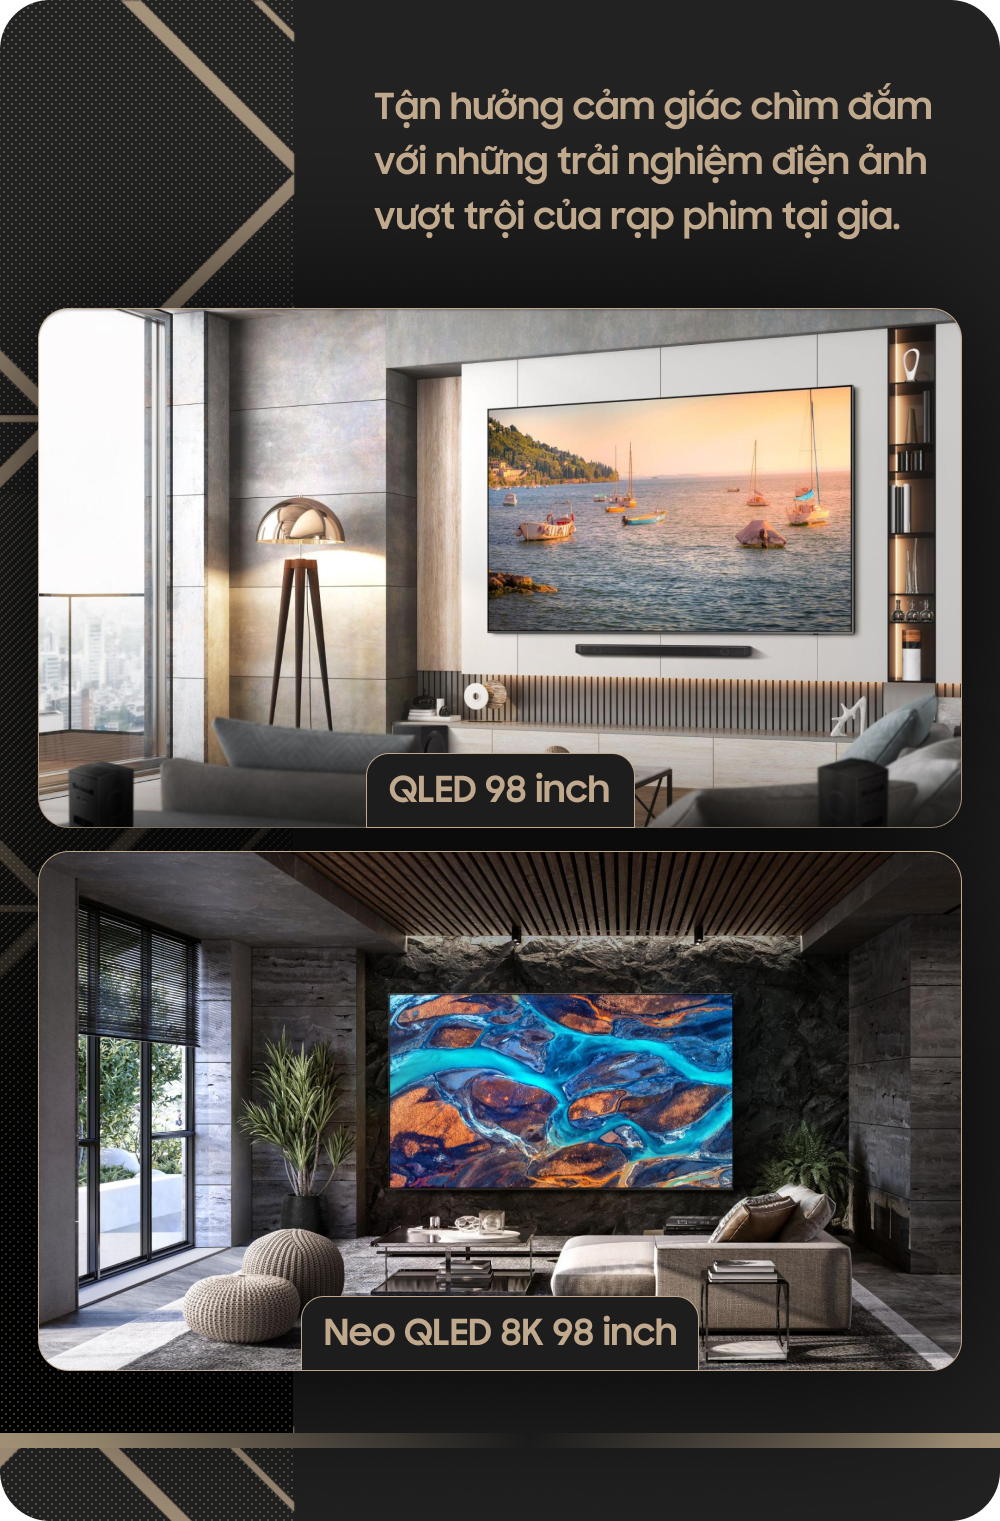 "Dũng khí" giúp Samsung tự tin thương mại hóa TV kích cỡ 98 inch- Ảnh 3.